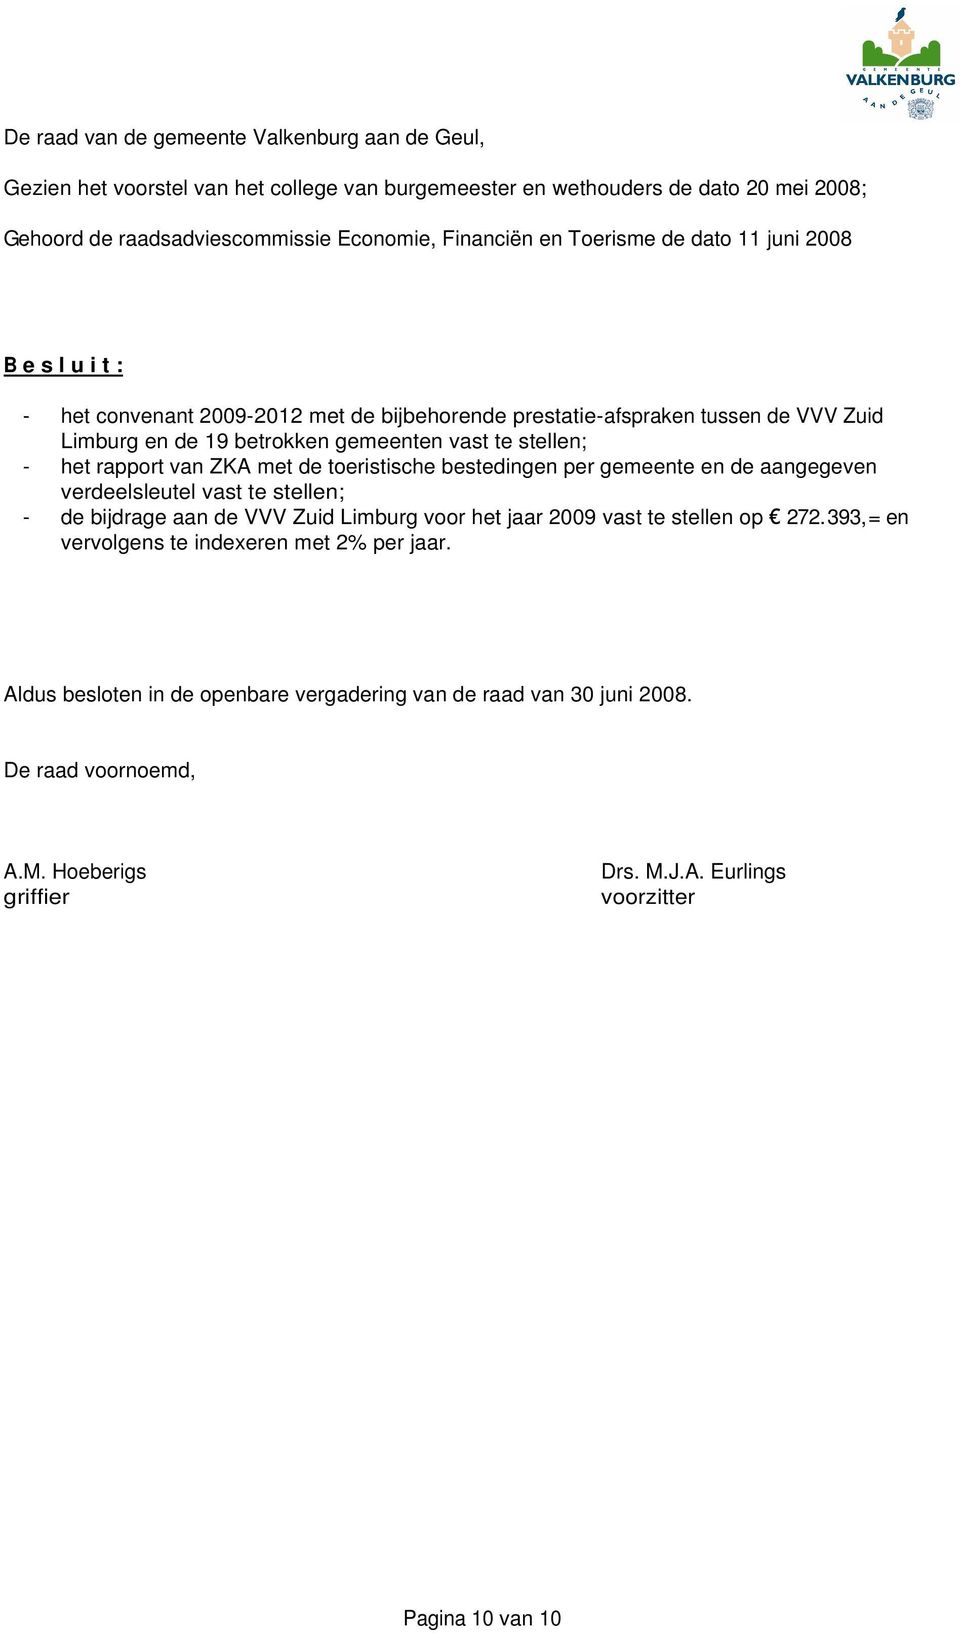 rapport van ZKA met de toeristische bestedingen per gemeente en de aangegeven verdeelsleutel vast te stellen; - de bijdrage aan de VVV Zuid Limburg voor het jaar 2009 vast te stellen op 272.